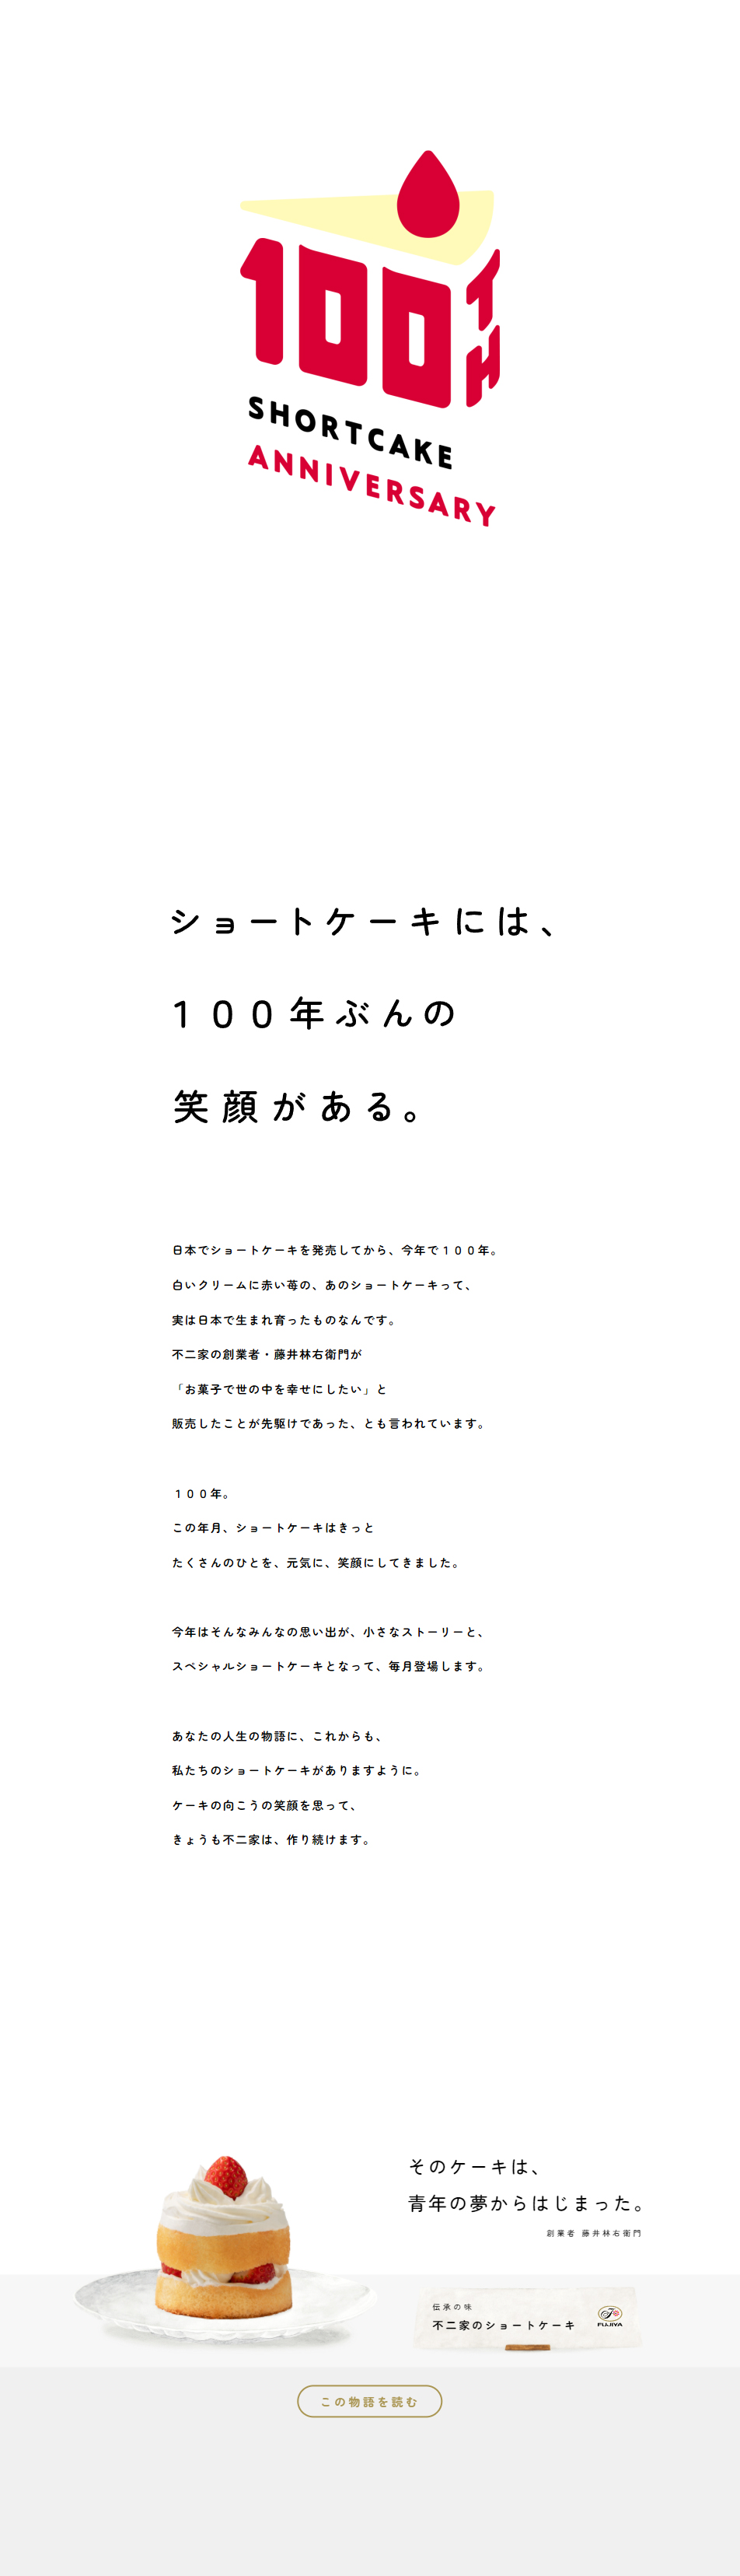 ショートケーキ 100th Anniversary_pc_1